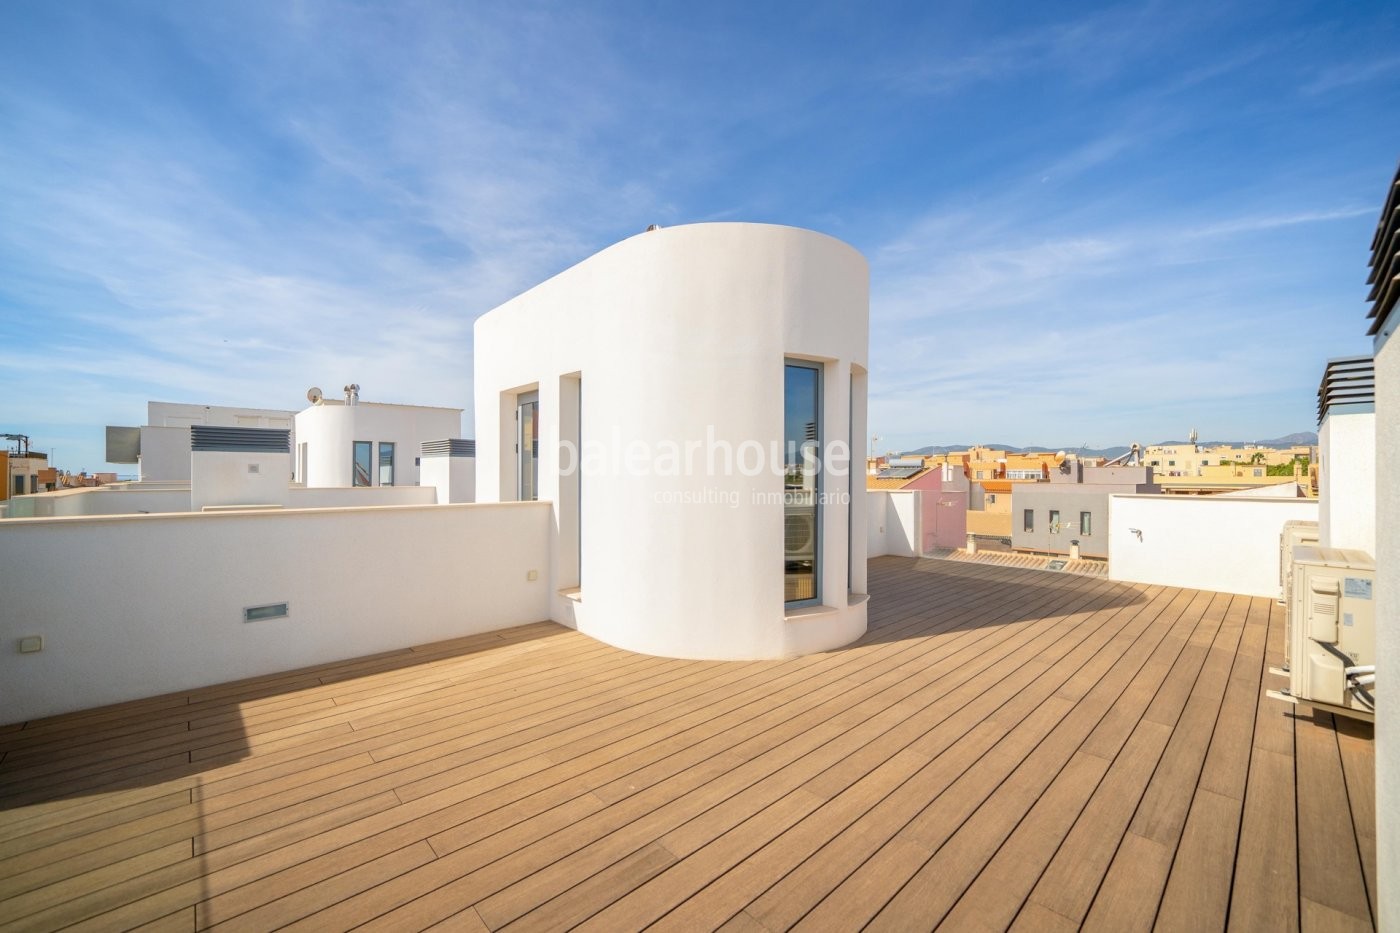 Diseño actual y el máximo confort al lado del mar en estas nuevas viviendas tríplex con solárium.